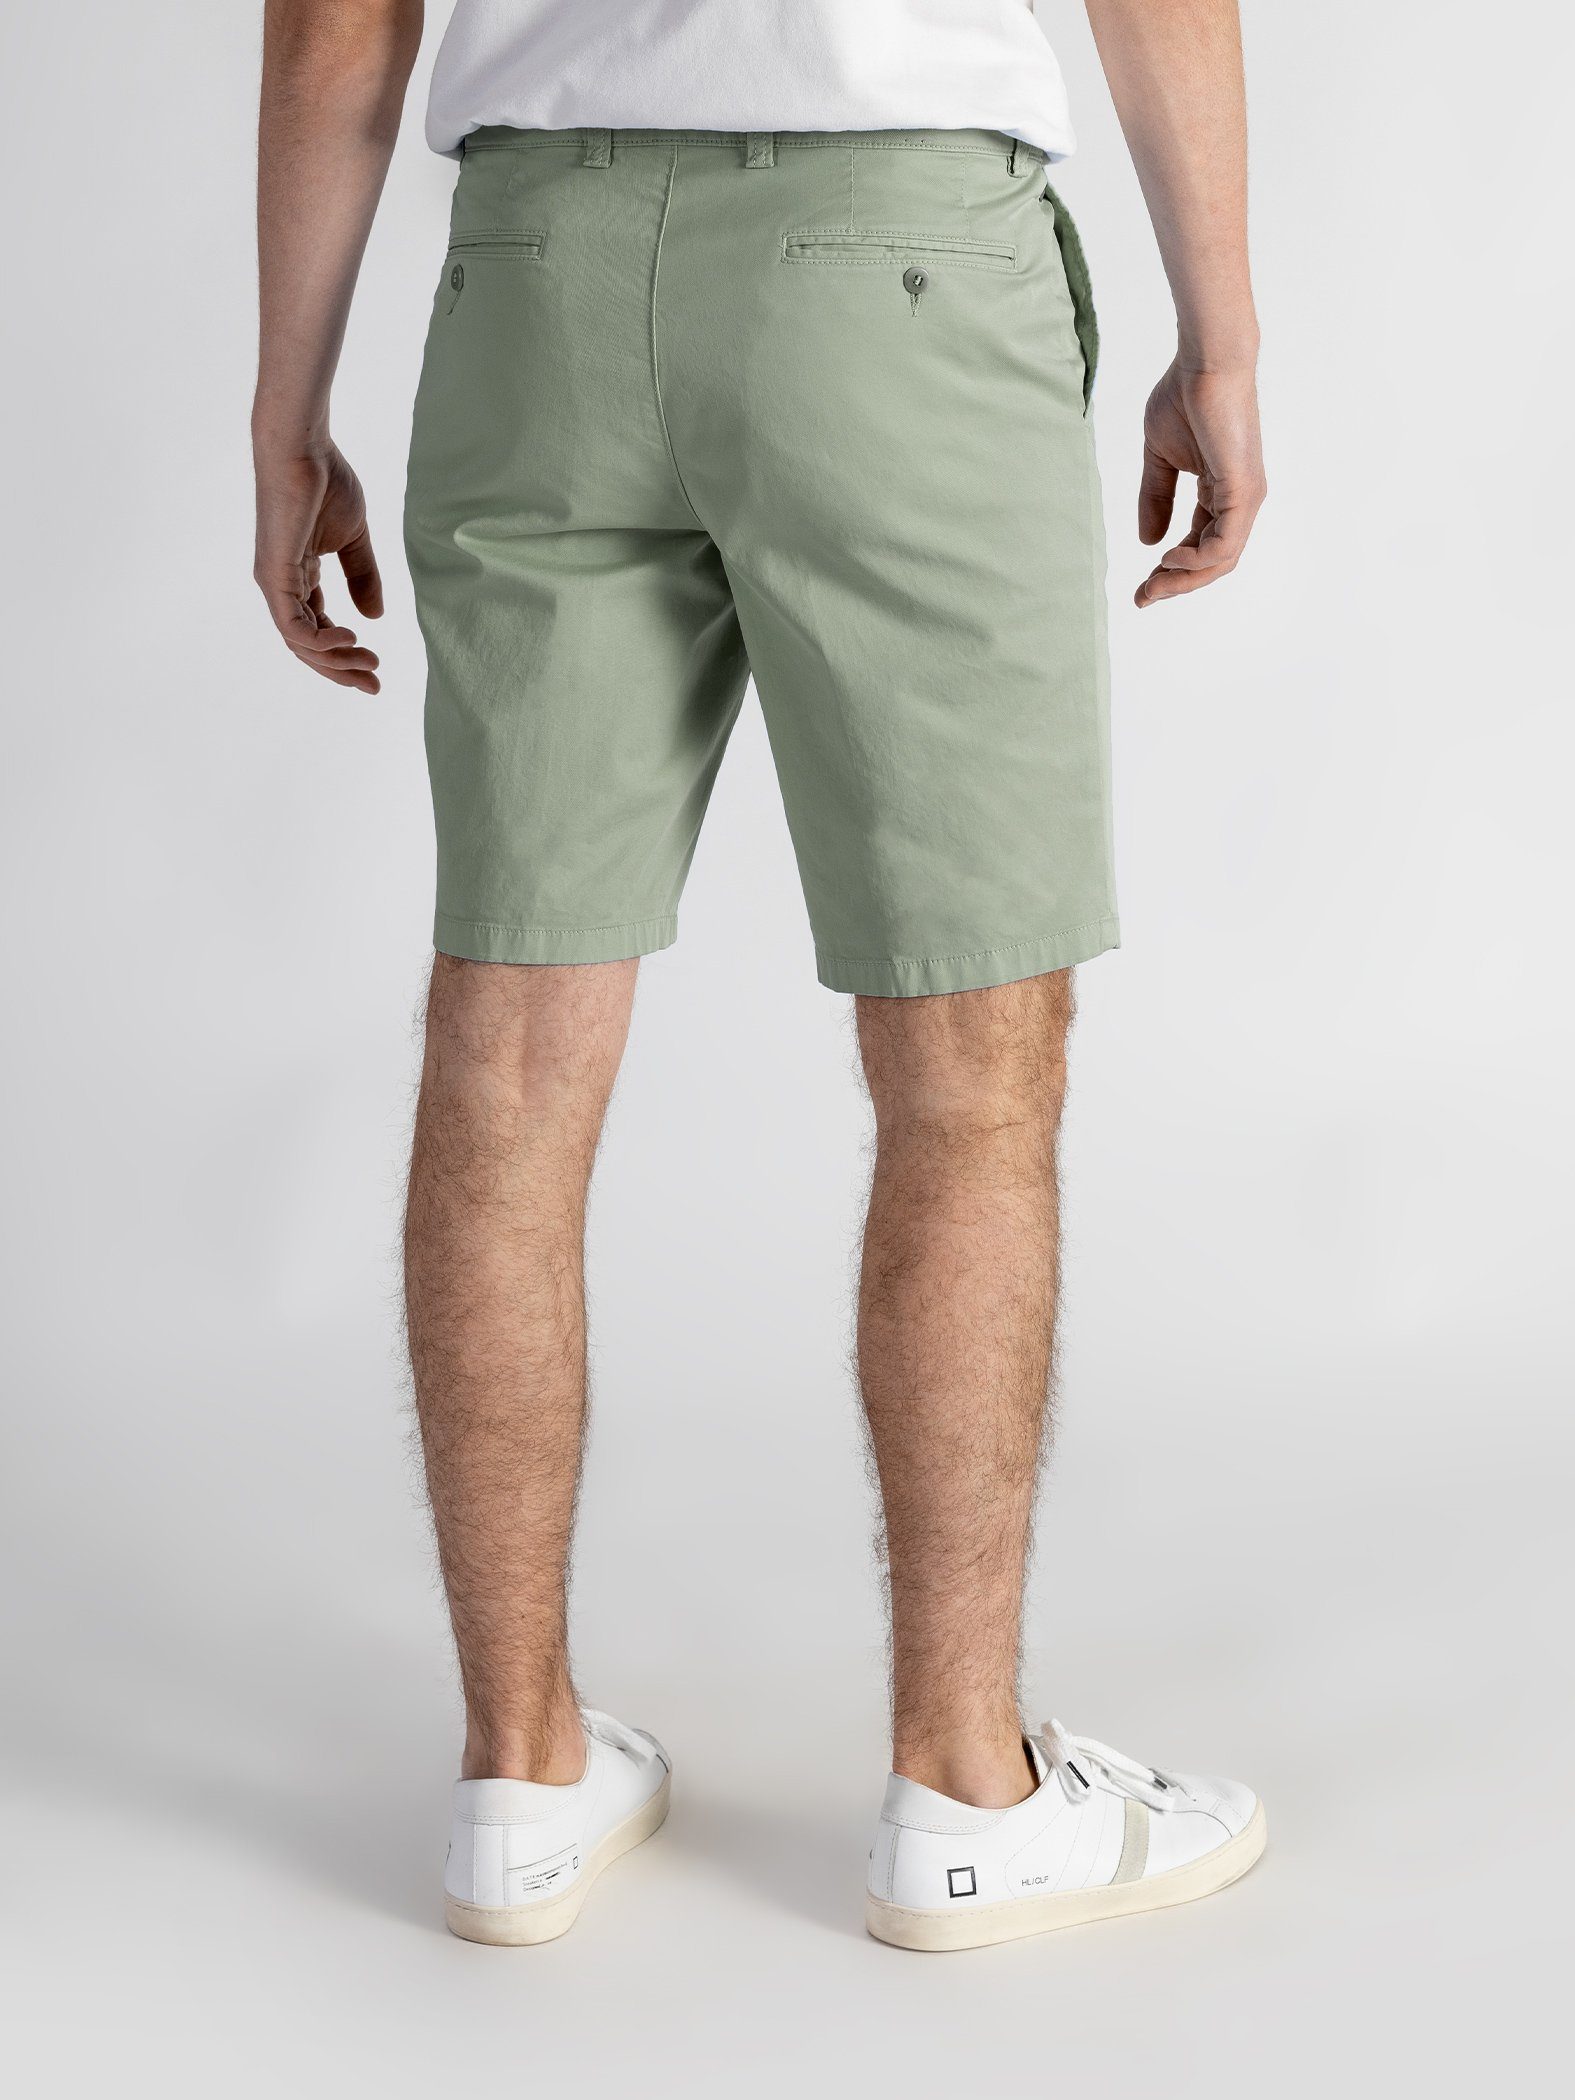 TwoMates Shorts Shorts hellgrün elastischem Farbauswahl, Bund, mit GOTS-zertifiziert